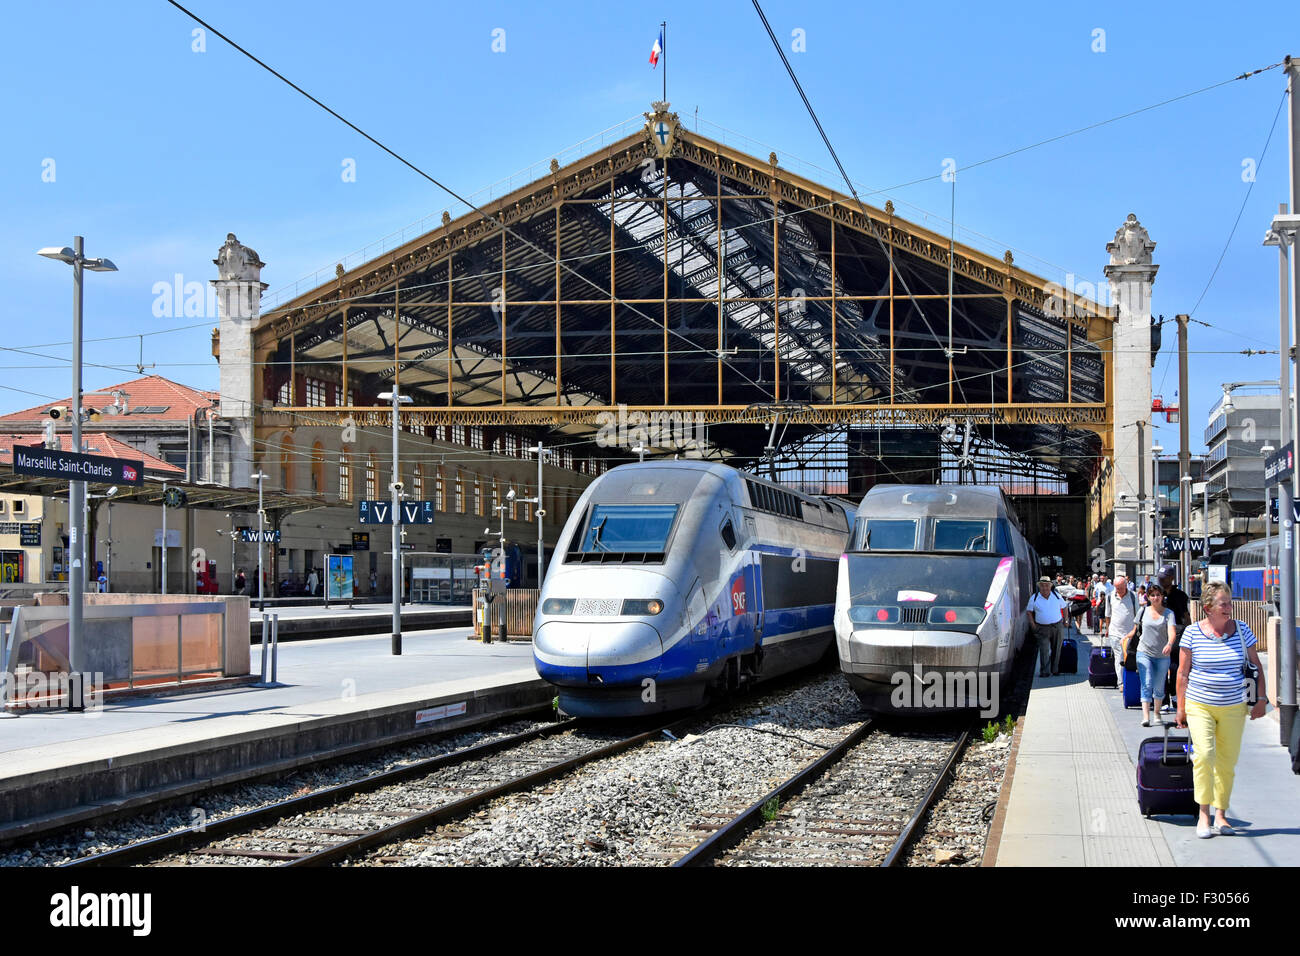 Trasporto ferroviario in Francia treni ad alta velocità SNCF TGV alla stazione ferroviaria francese Marseille saint charles con passeggeri sulla piattaforma estate cielo blu giorno Foto Stock